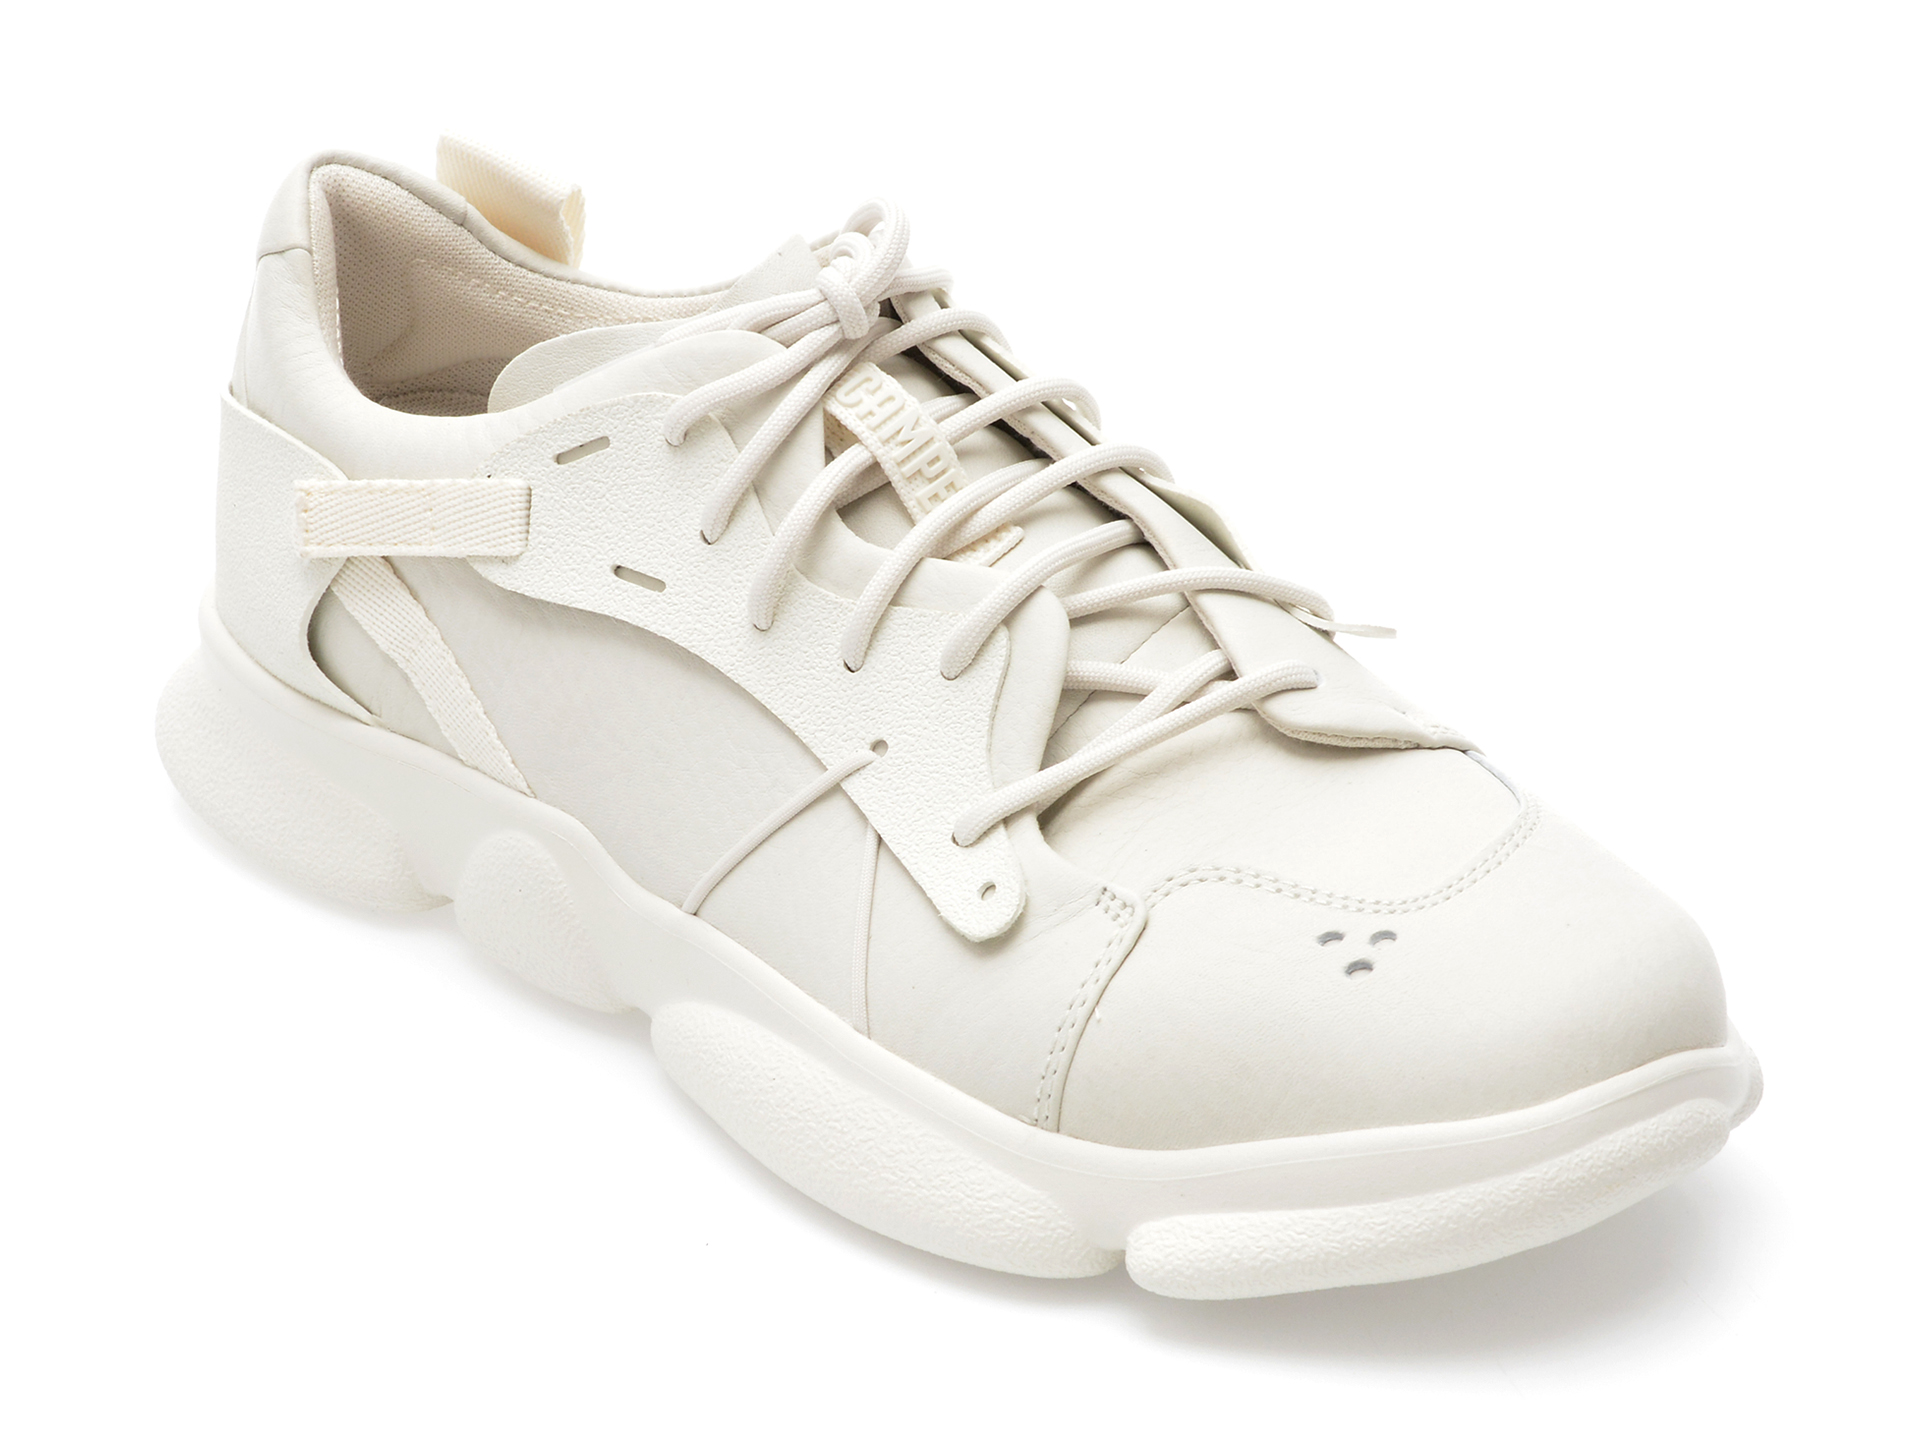 Pantofi sport CAMPER albi, K100845, din piele naturala